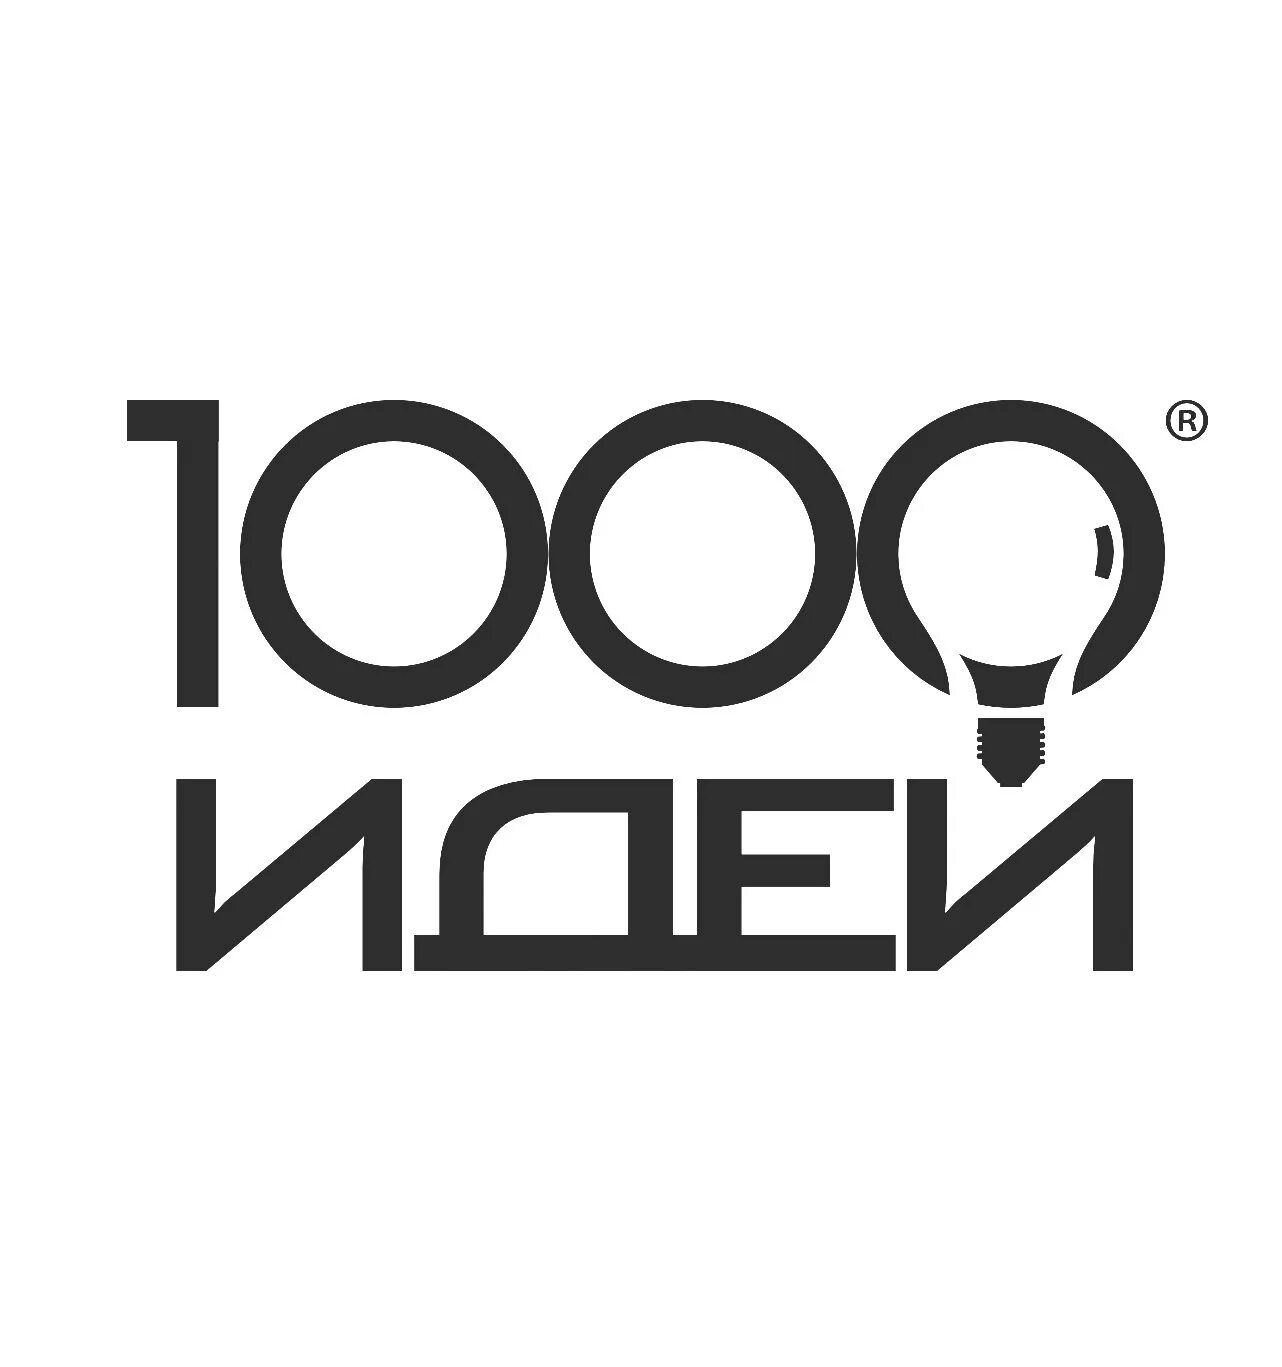 Топ 1000 идей. 1000 Идей. Портал 1000 идей. Игра стартап 1000 идей. Это www.1000ideas.